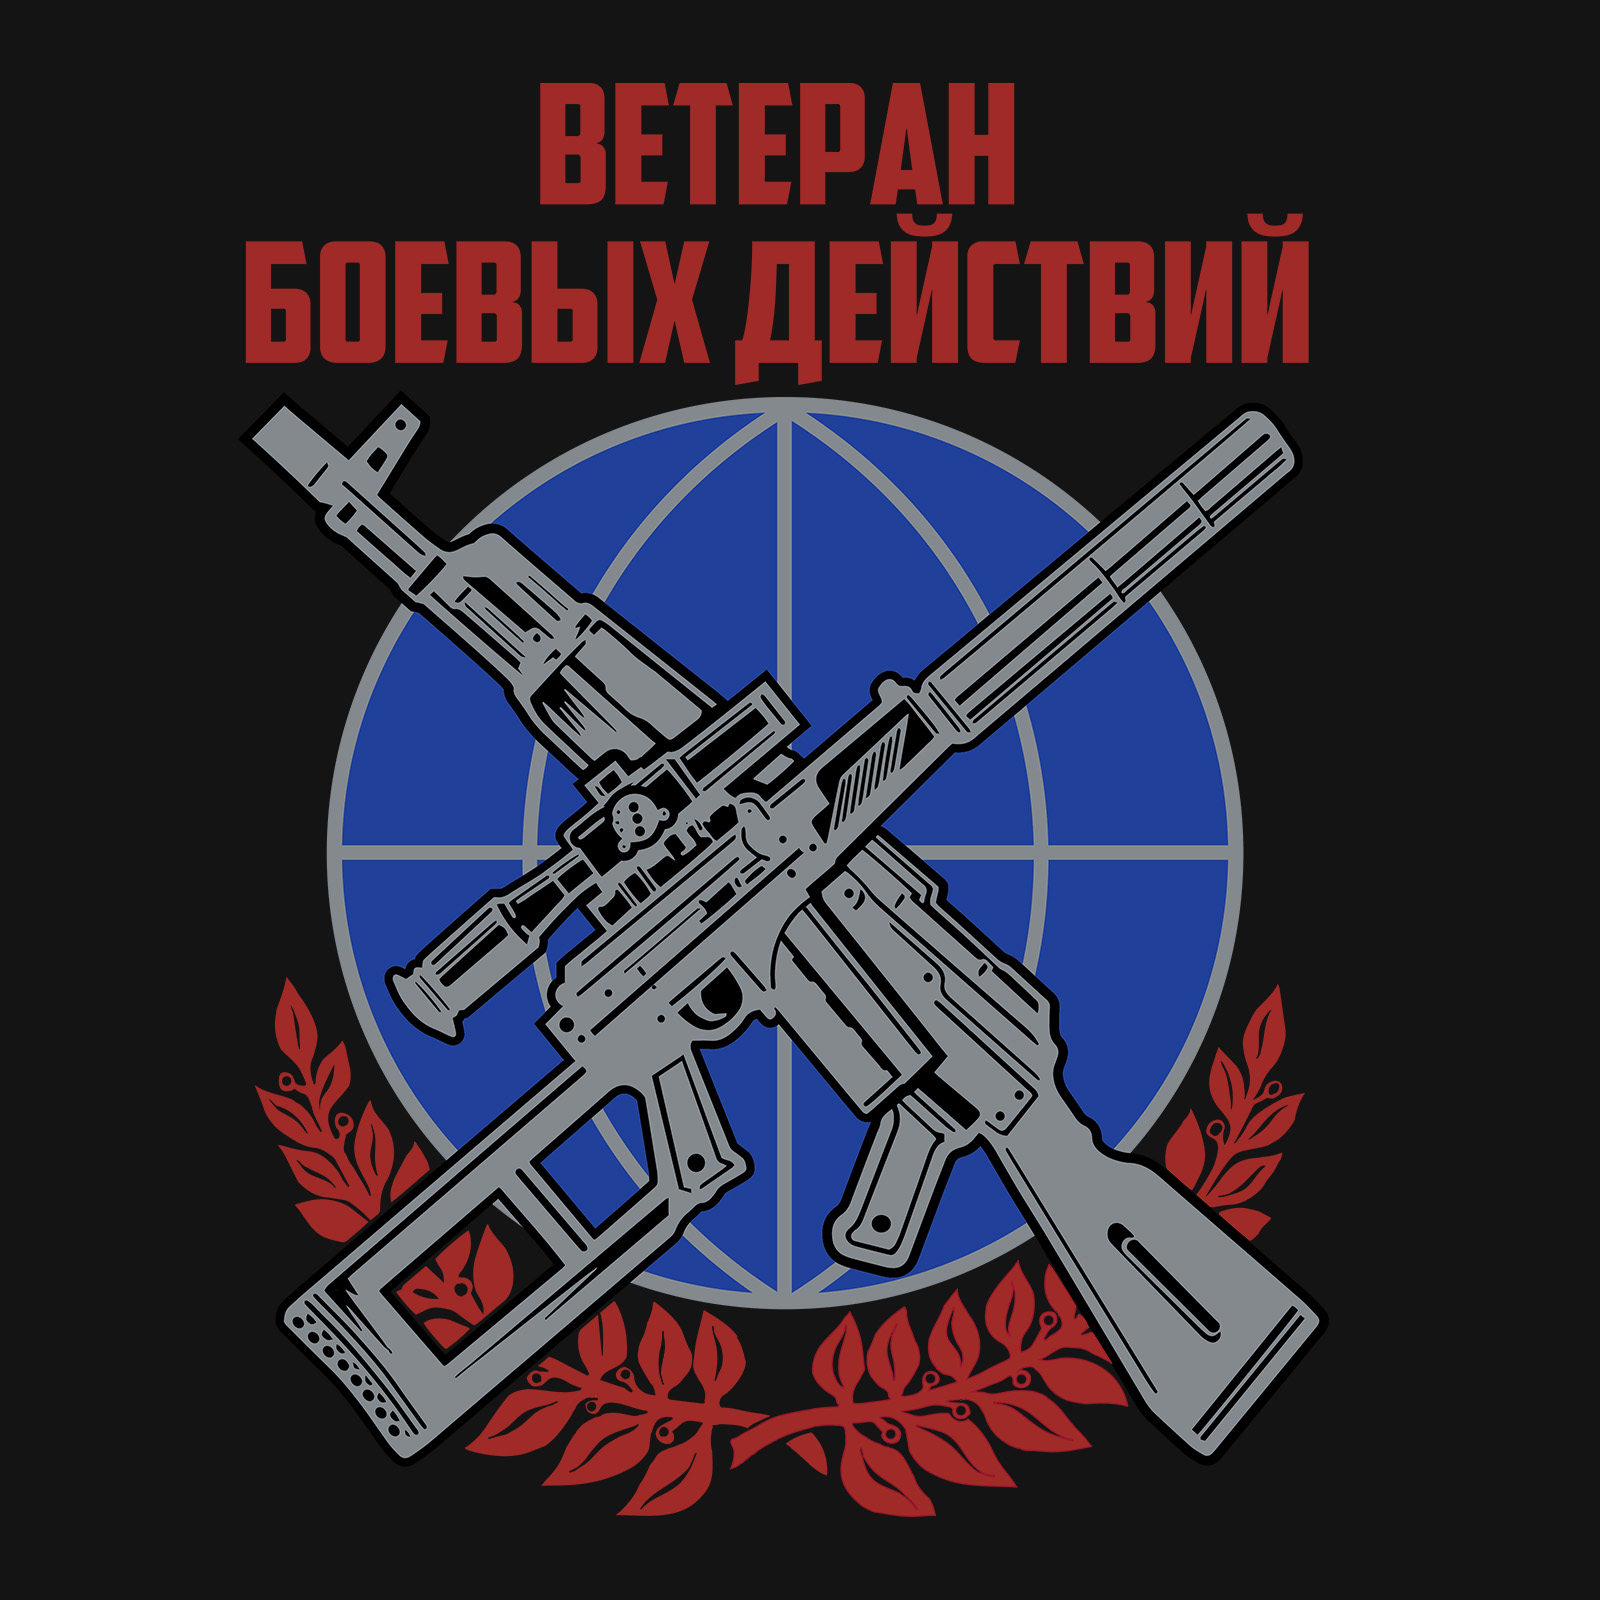 Черная футболка Ветерану боевых действий 